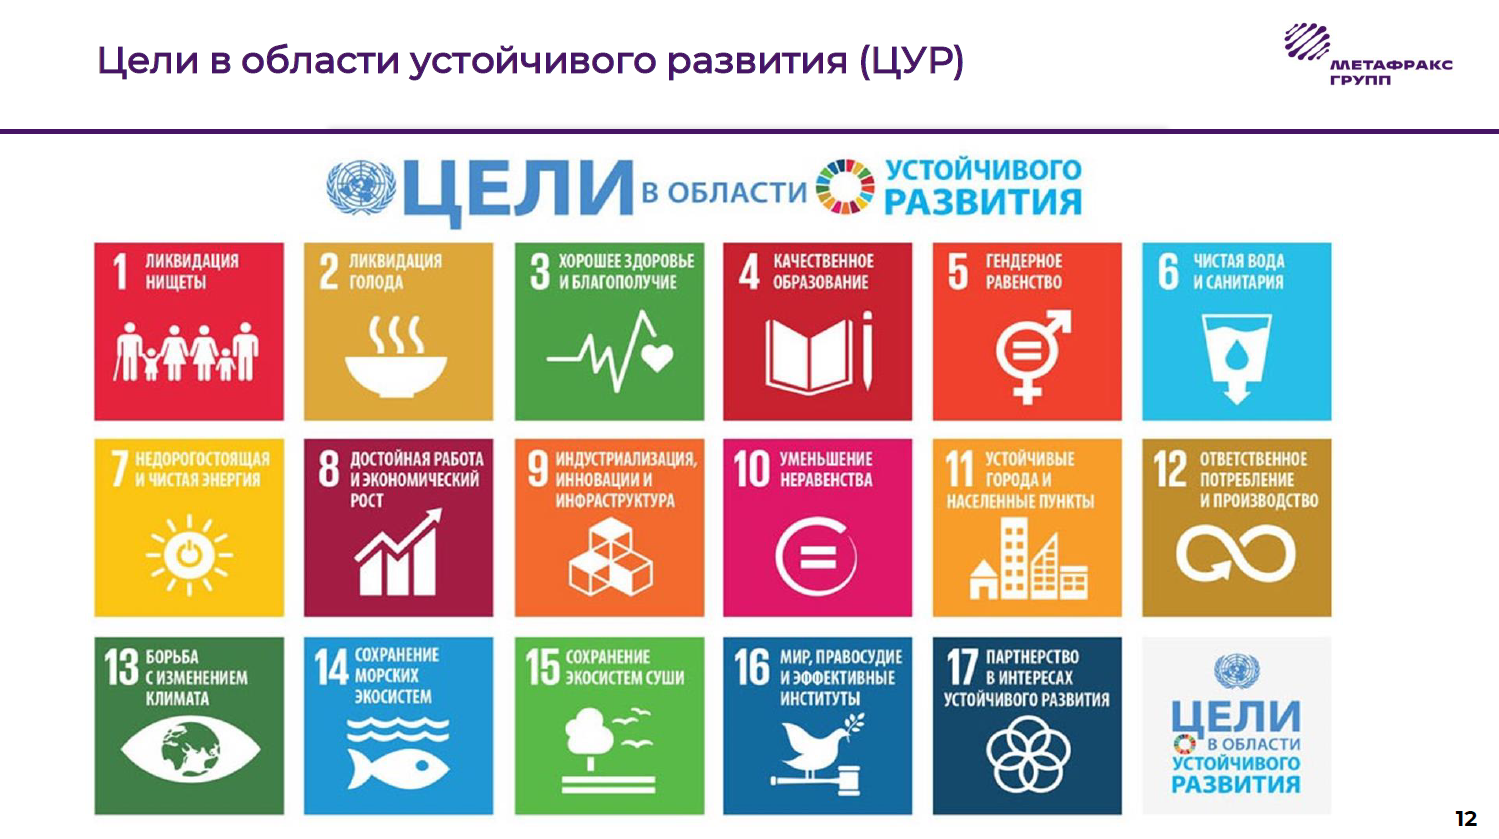 Цели оон в области развития. ЦУР цели устойчивого развития. Цели устойчивого развития ООН 2030. Цели устойчивого развития в регионах. План устойчивого развития.